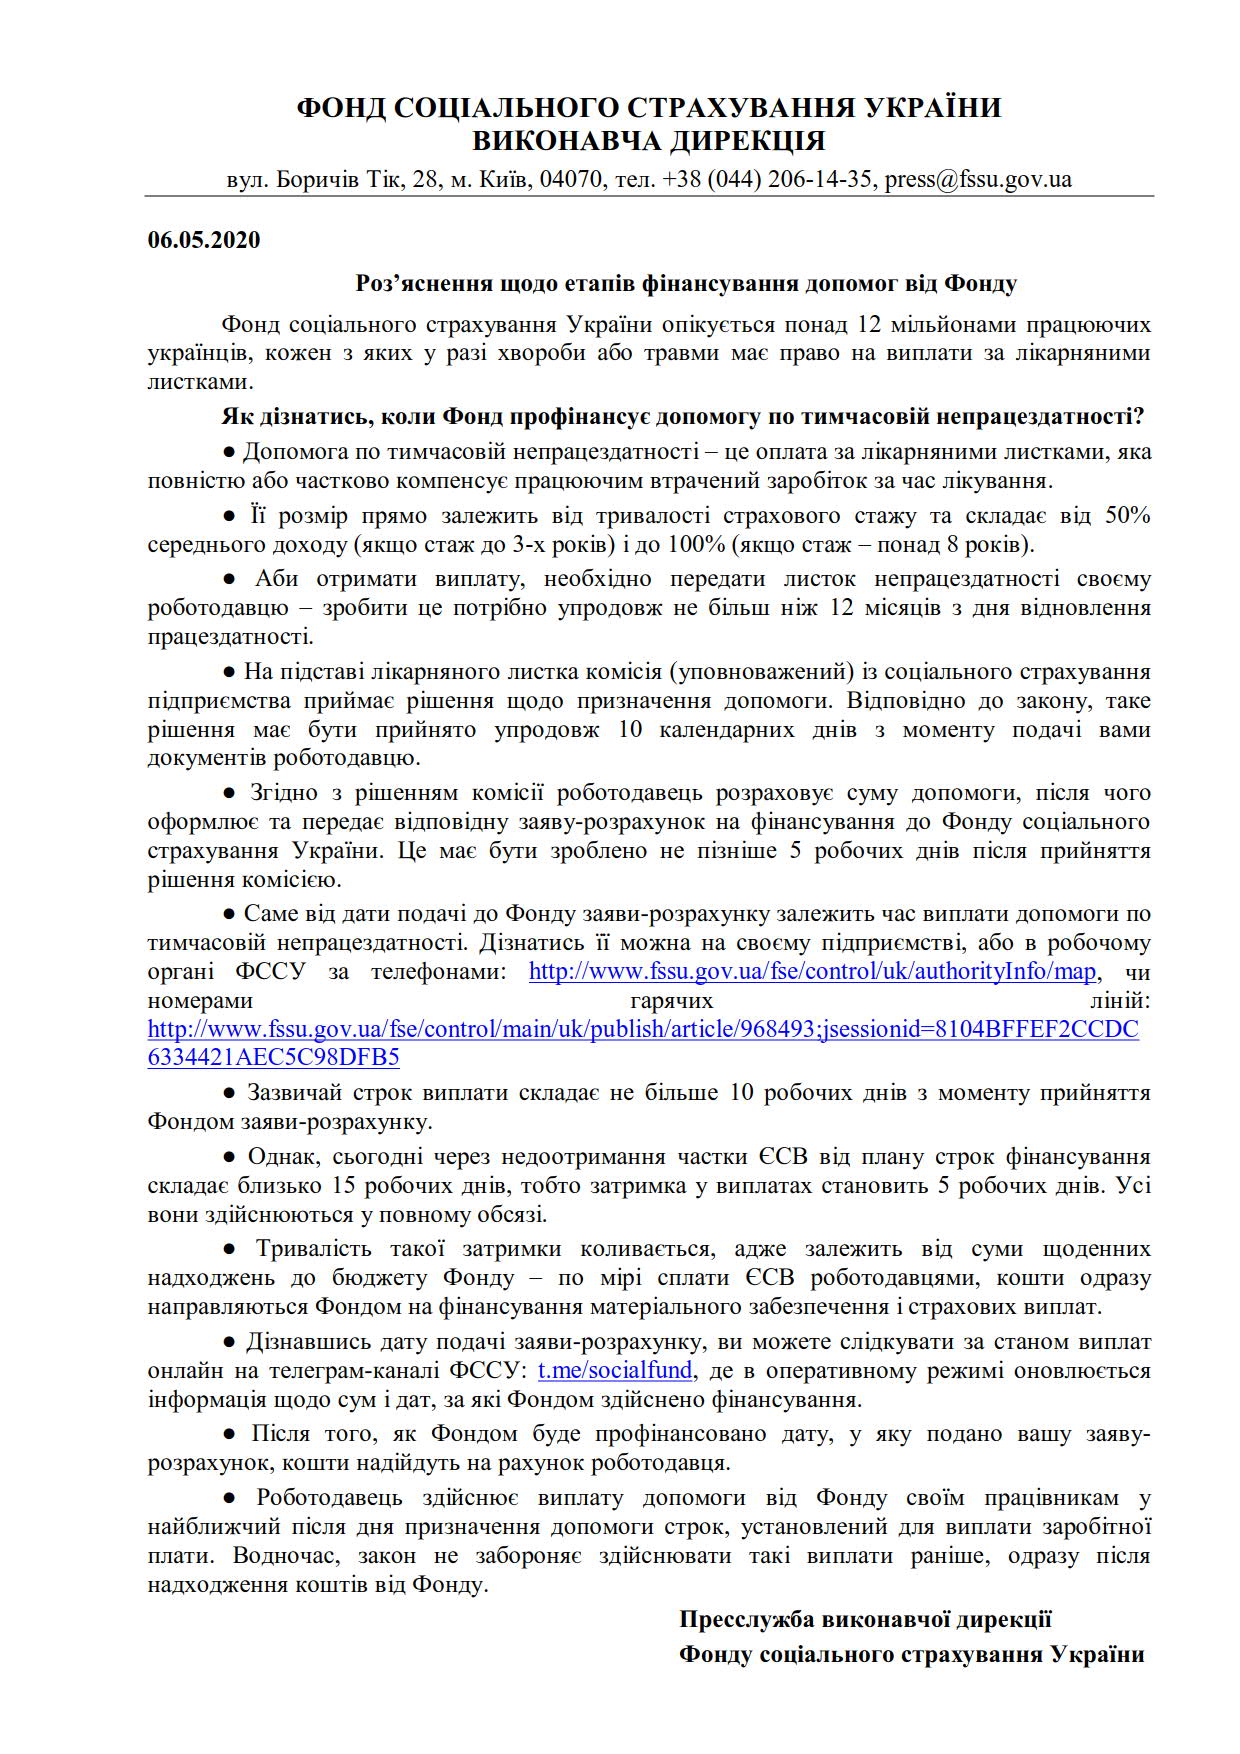 ФССУ_Етапи отримання допомог_06.05.20_1